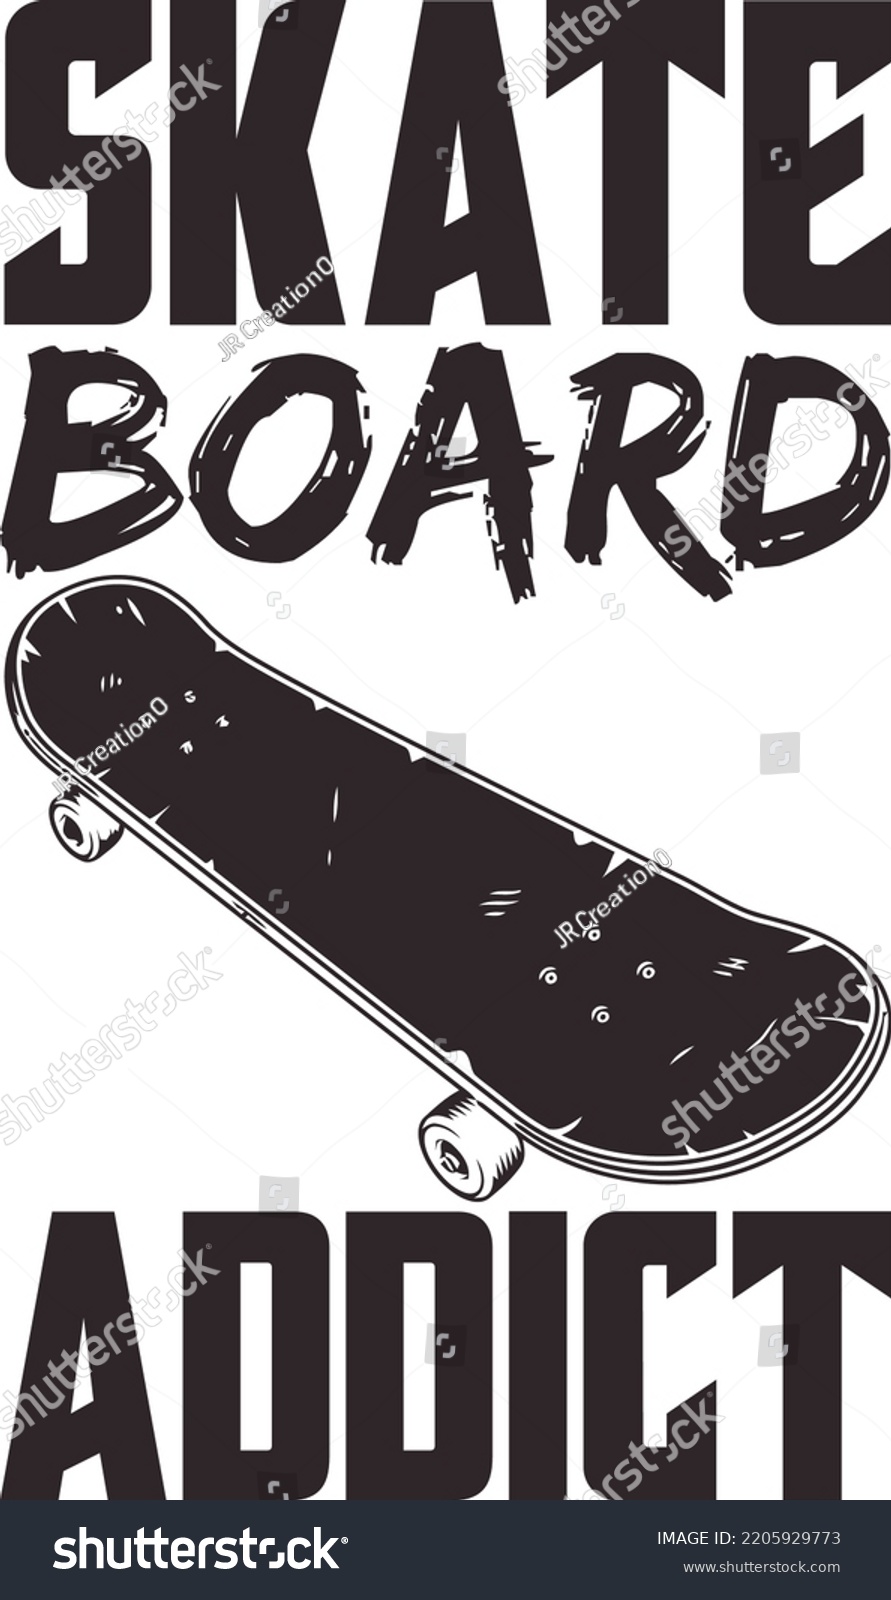 SVG of Skate board SVG design for mug, T-shirt, water bottle etc. svg